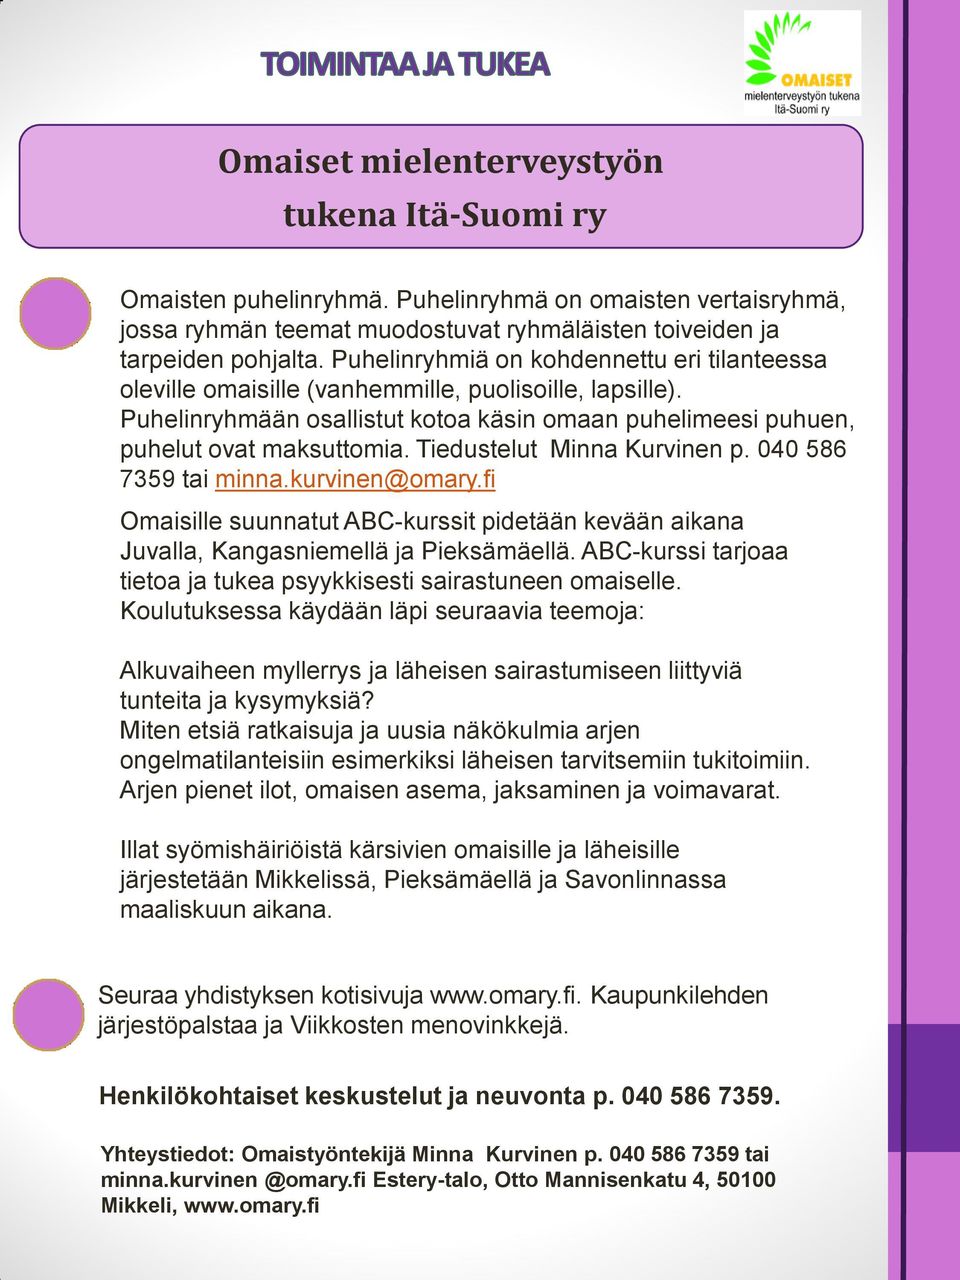 Tiedustelut Minna Kurvinen p. 040 586 7359 tai minna.kurvinen@omary.fi Omaisille suunnatut ABC-kurssit pidetään kevään aikana Juvalla, Kangasniemellä ja Pieksämäellä.